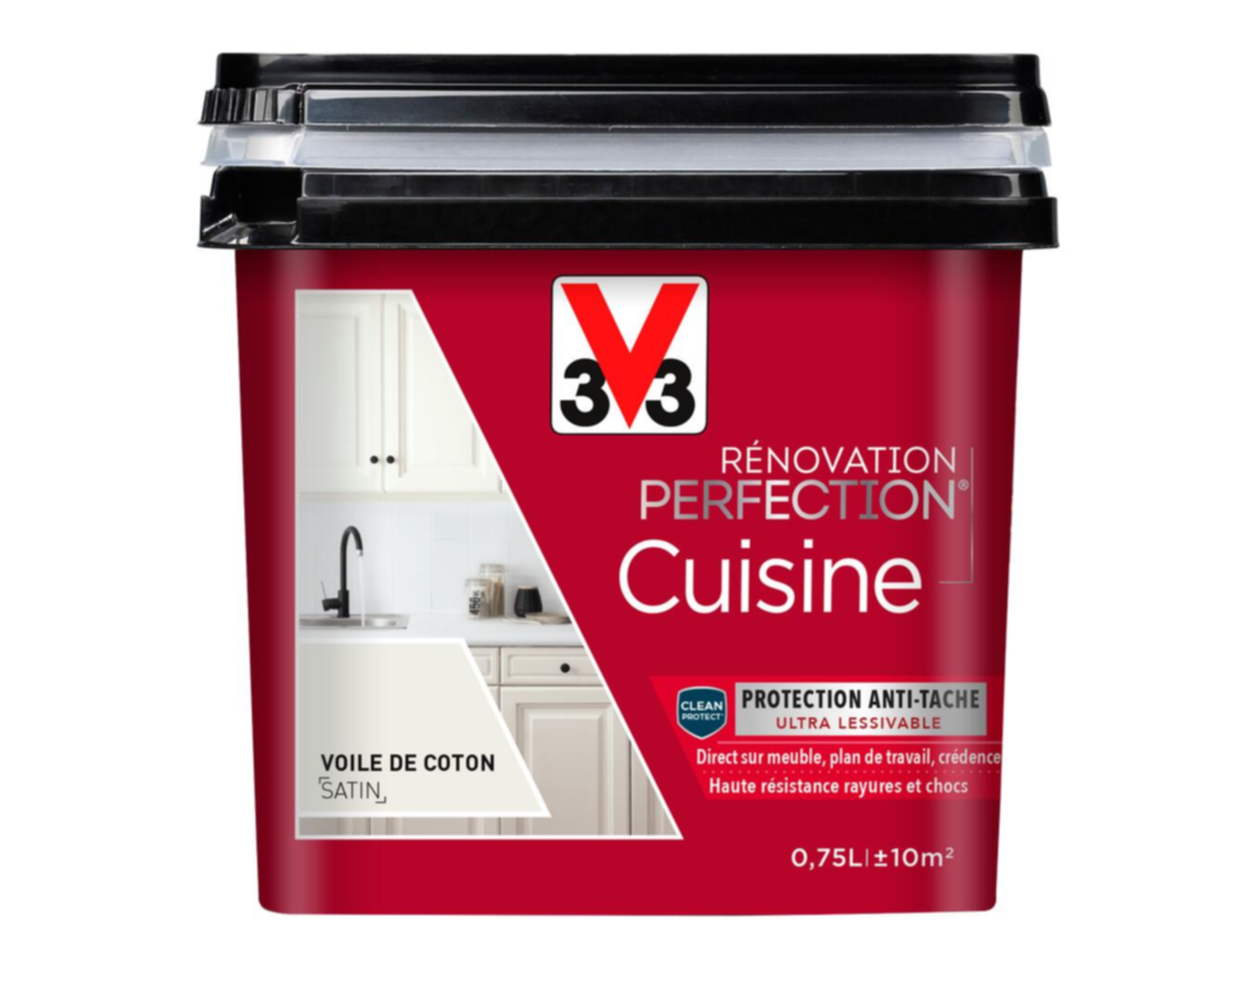 Peinture rénovation cuisine Perfection voile de coton satin 0,75l - V33